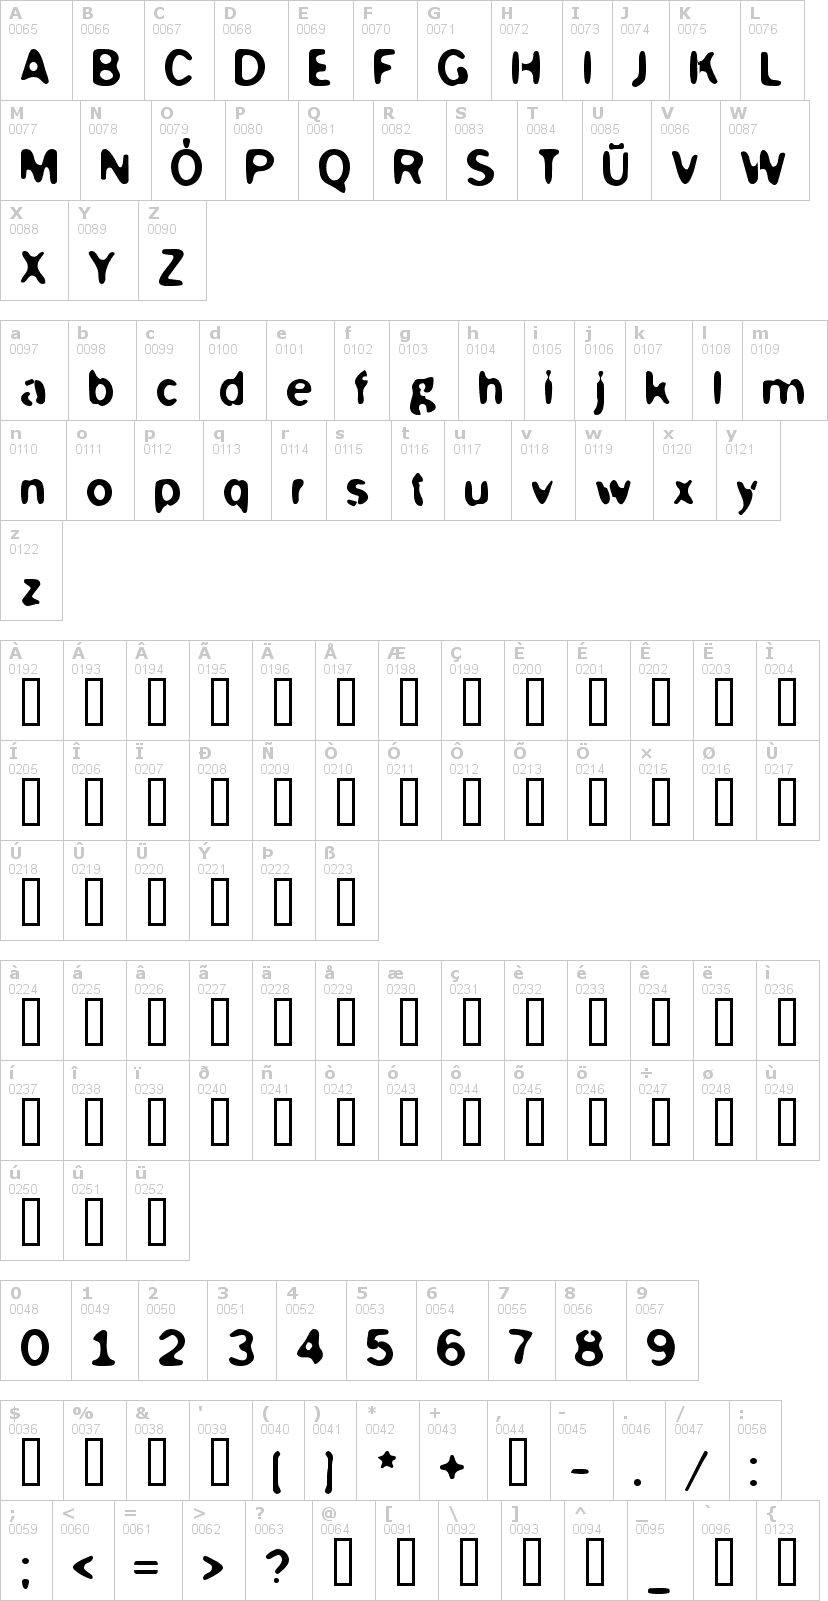 Lettere dell'alfabeto del font mckoy con le quali è possibile realizzare adesivi prespaziati